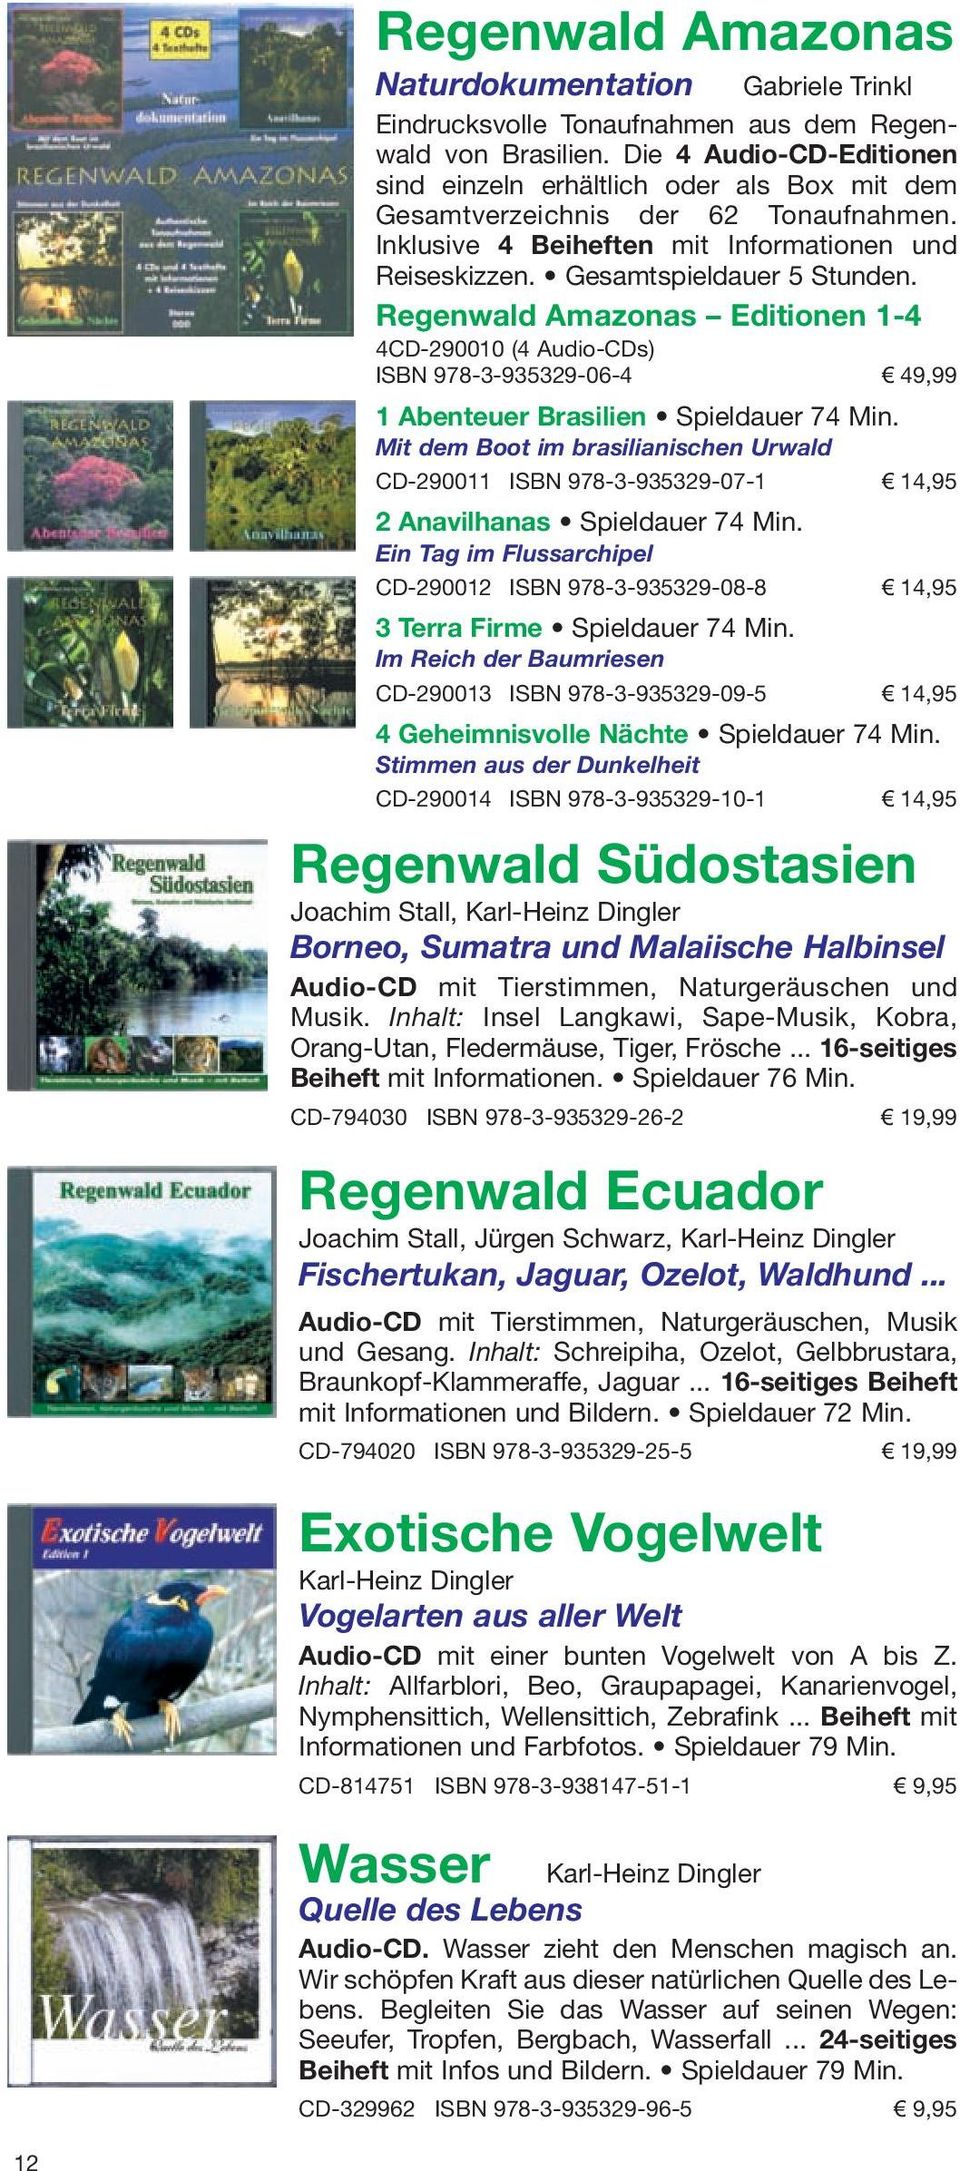 Regenwald Amazonas Editionen 1-4 4CD-290010 (4 Audio-CDs) ISBN 978-3-935329-06-4 49,99 1 Abenteuer Brasilien Spieldauer 74 Min.